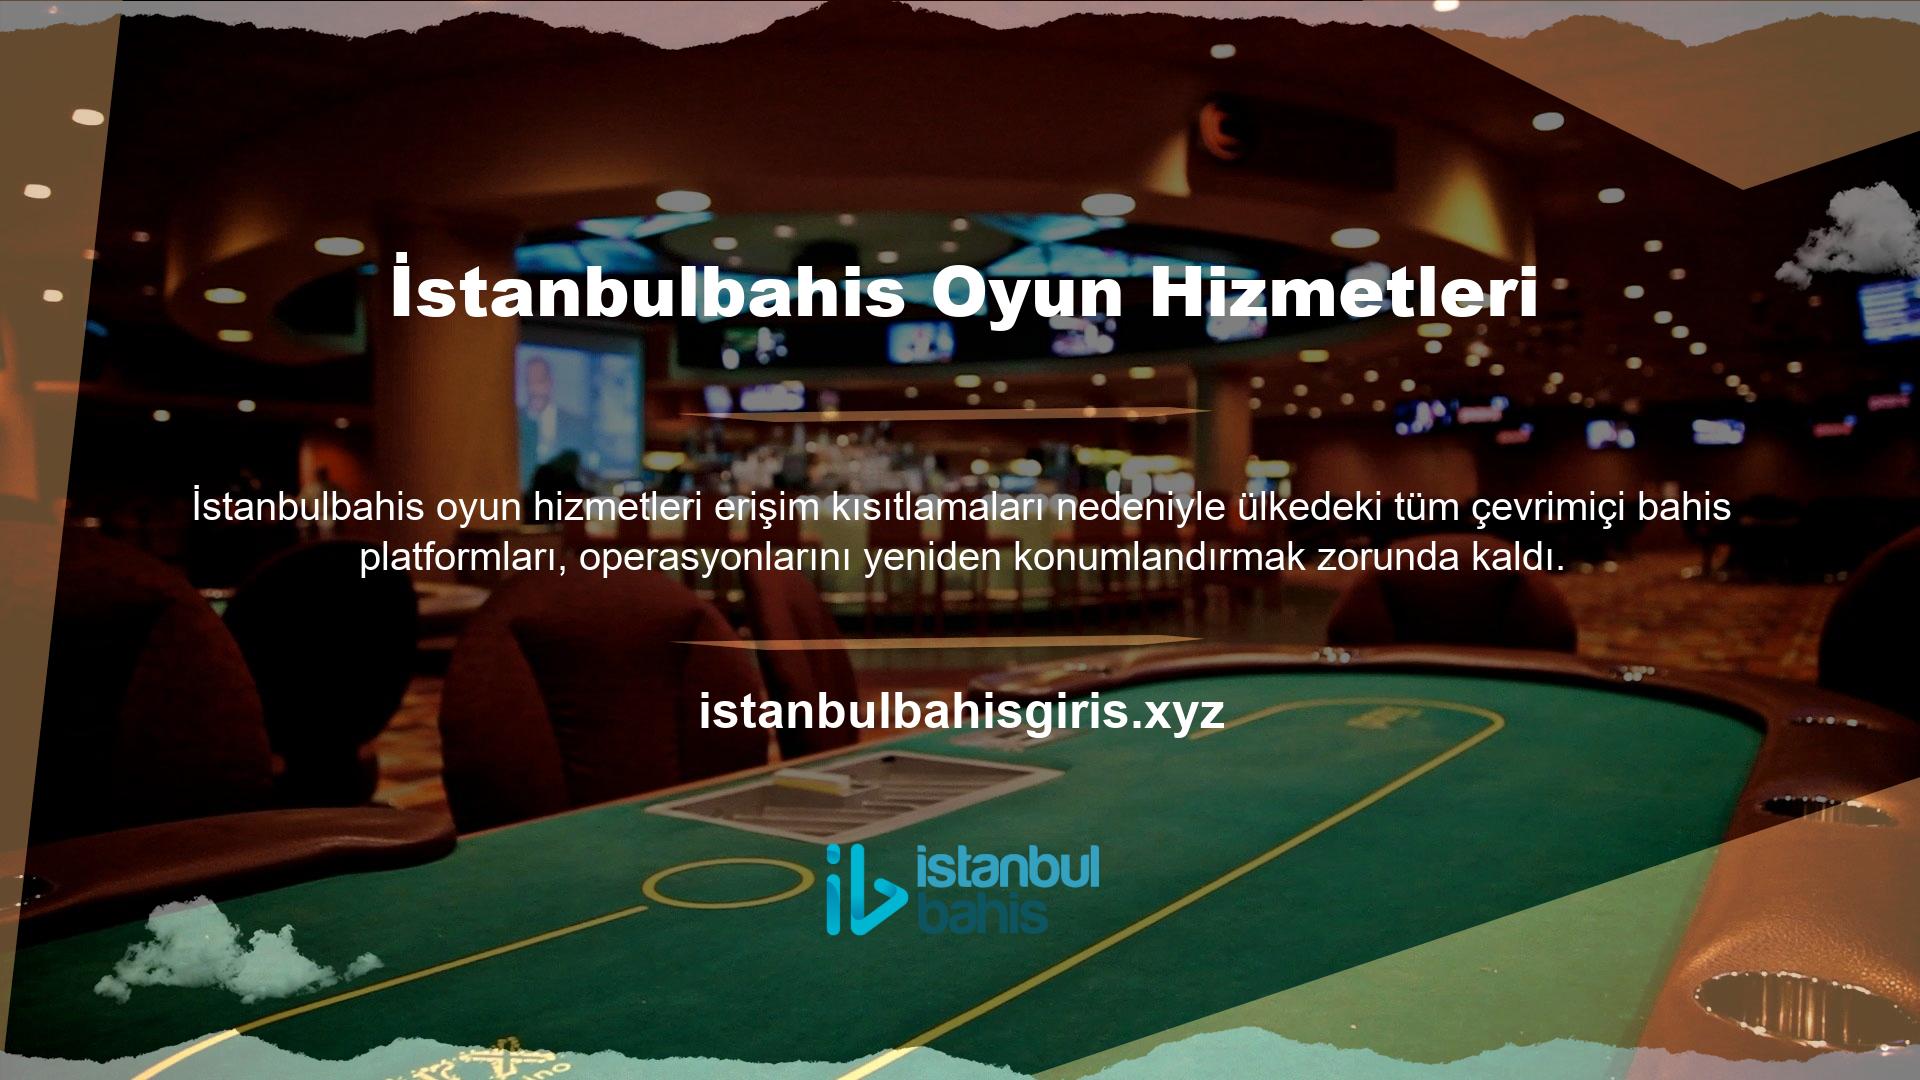 İstanbulbahis yasa dışı bahislere karıştığı için web sitesi adresleri engellenebilir